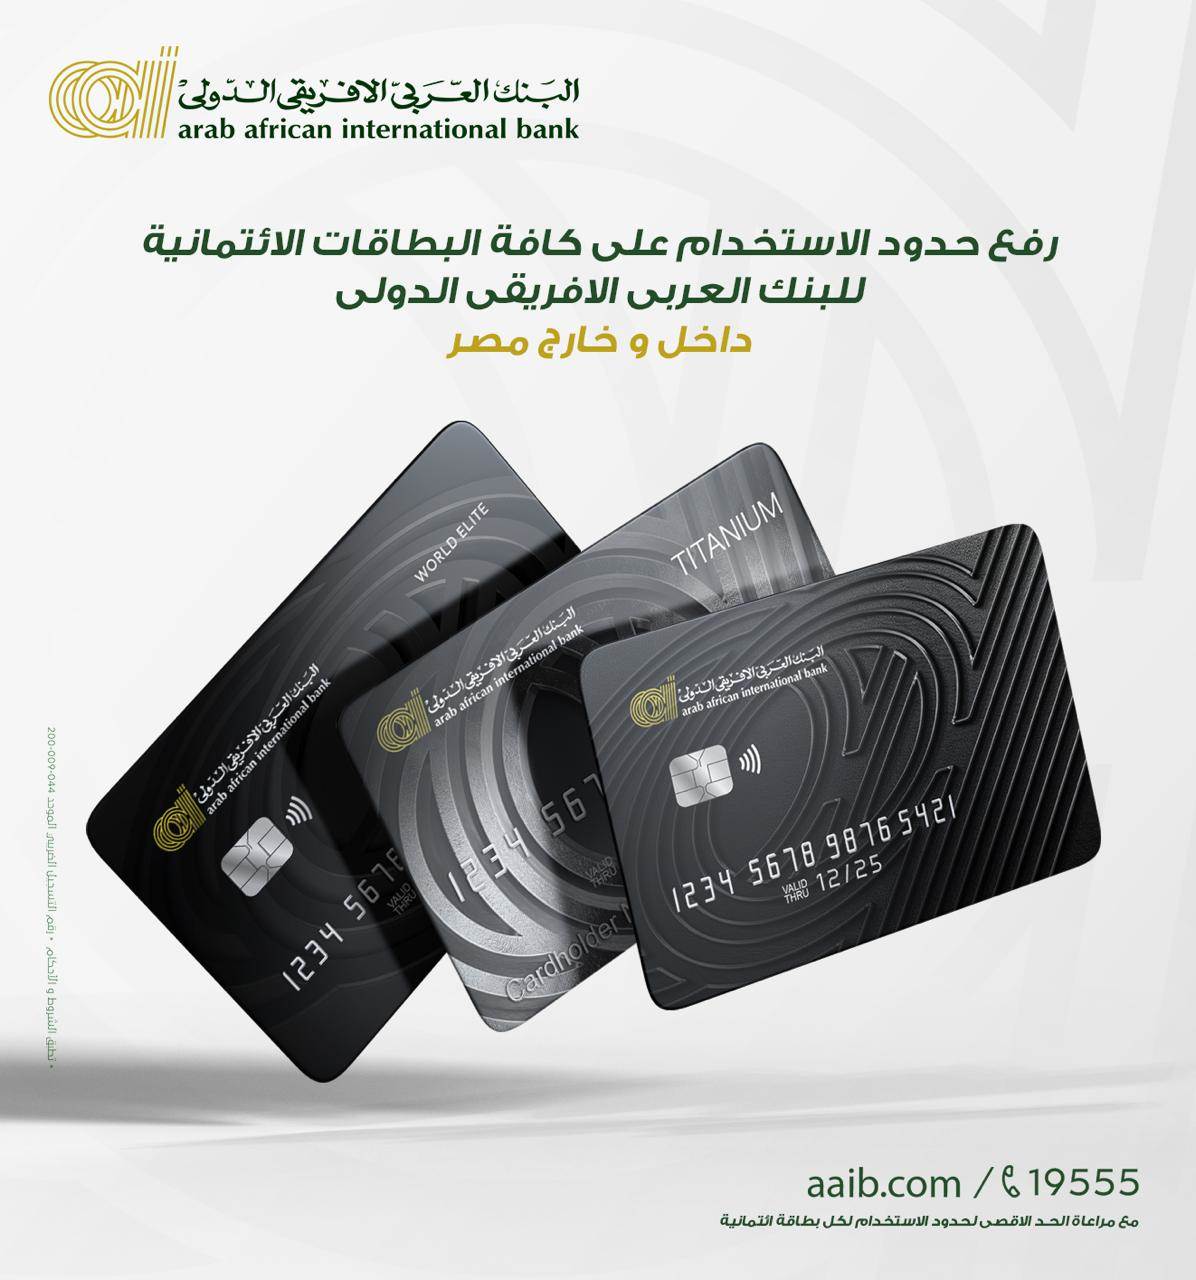 بطاقات البنك العربي الافريقي الدولي